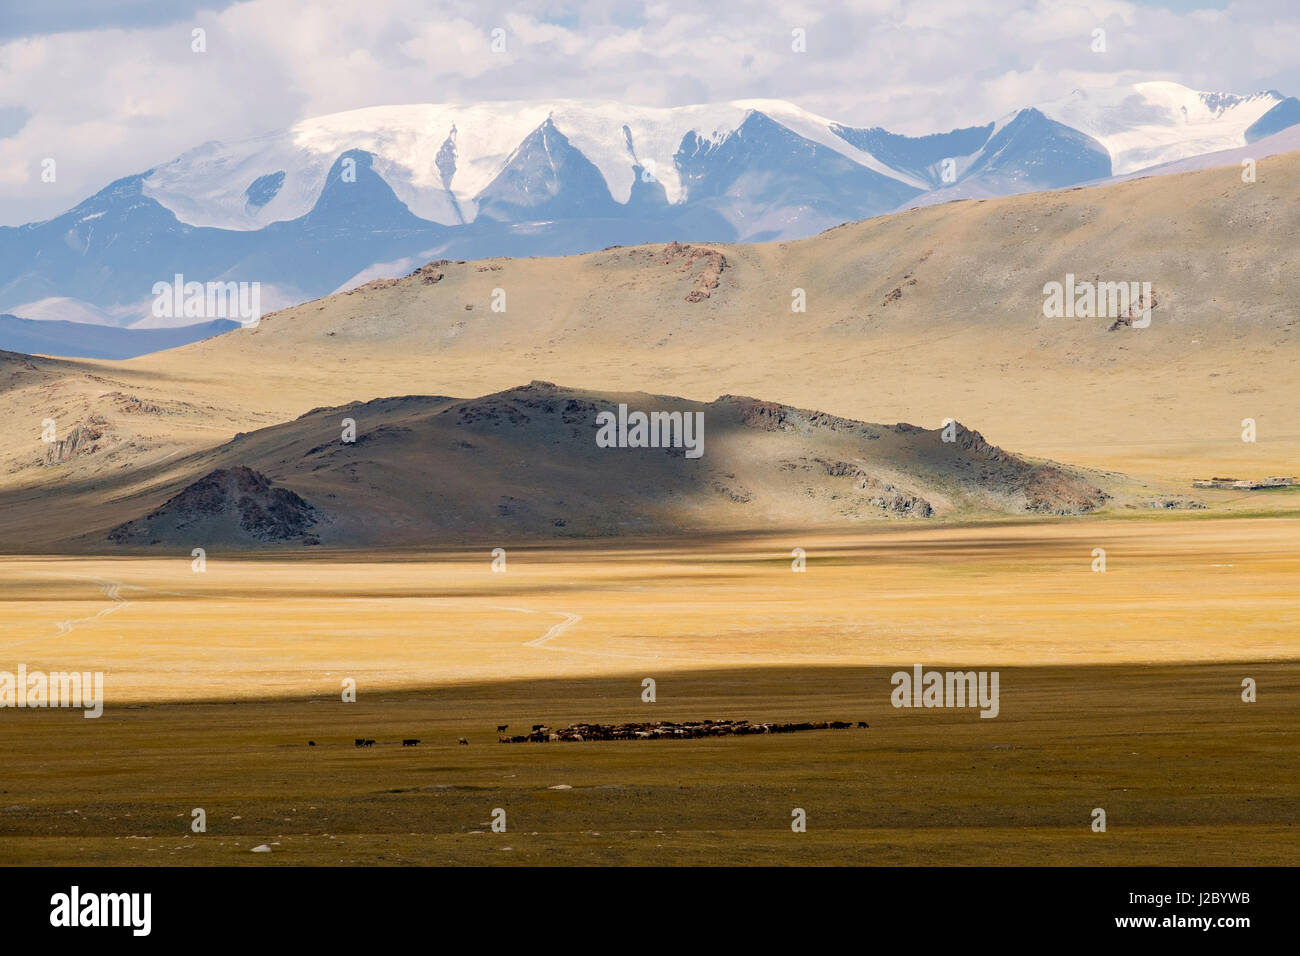 Asien, westlichen Mongolei, Khovd Provinz, Altan Hokhii, Berge, Wüste  Hochtal, Landschaft und Gelände Stockfotografie - Alamy